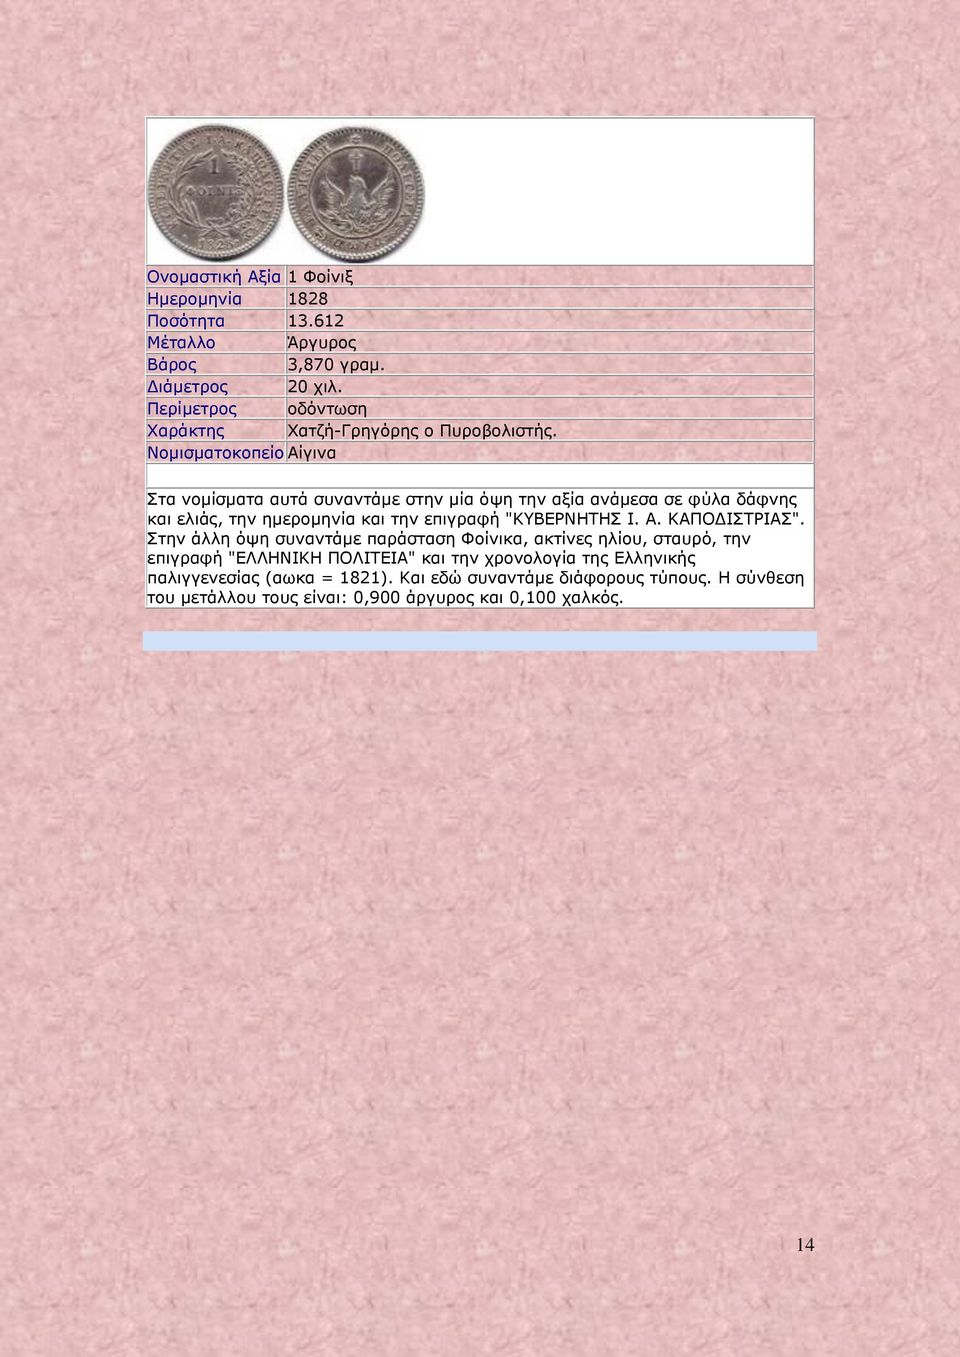 Νομισματοκοπείο Αίγινα Στα νομίσματα αυτά συναντάμε στην μία όψη την αξία ανάμεσα σε φύλα δάφνης και ελιάς, την ημερομηνία και την επιγραφή "ΚΥΒΕΡΝΗΤΗΣ